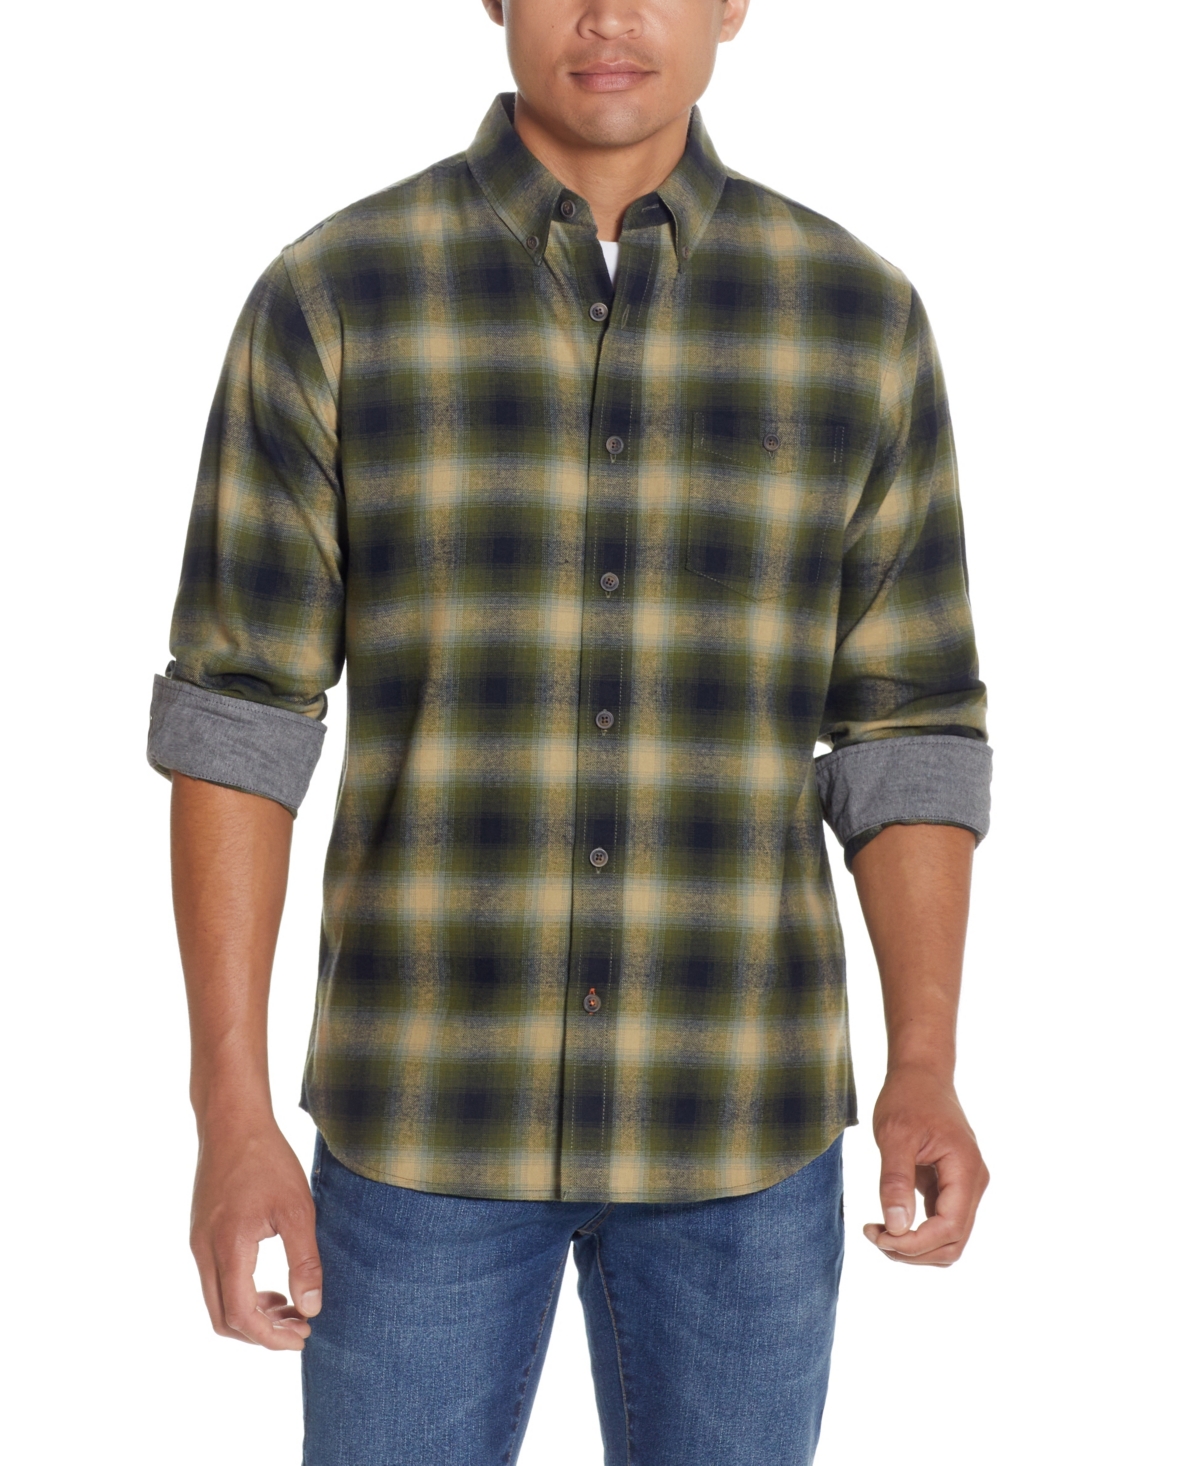 Men's Antique-Like Flannel Shirt - Cabernet